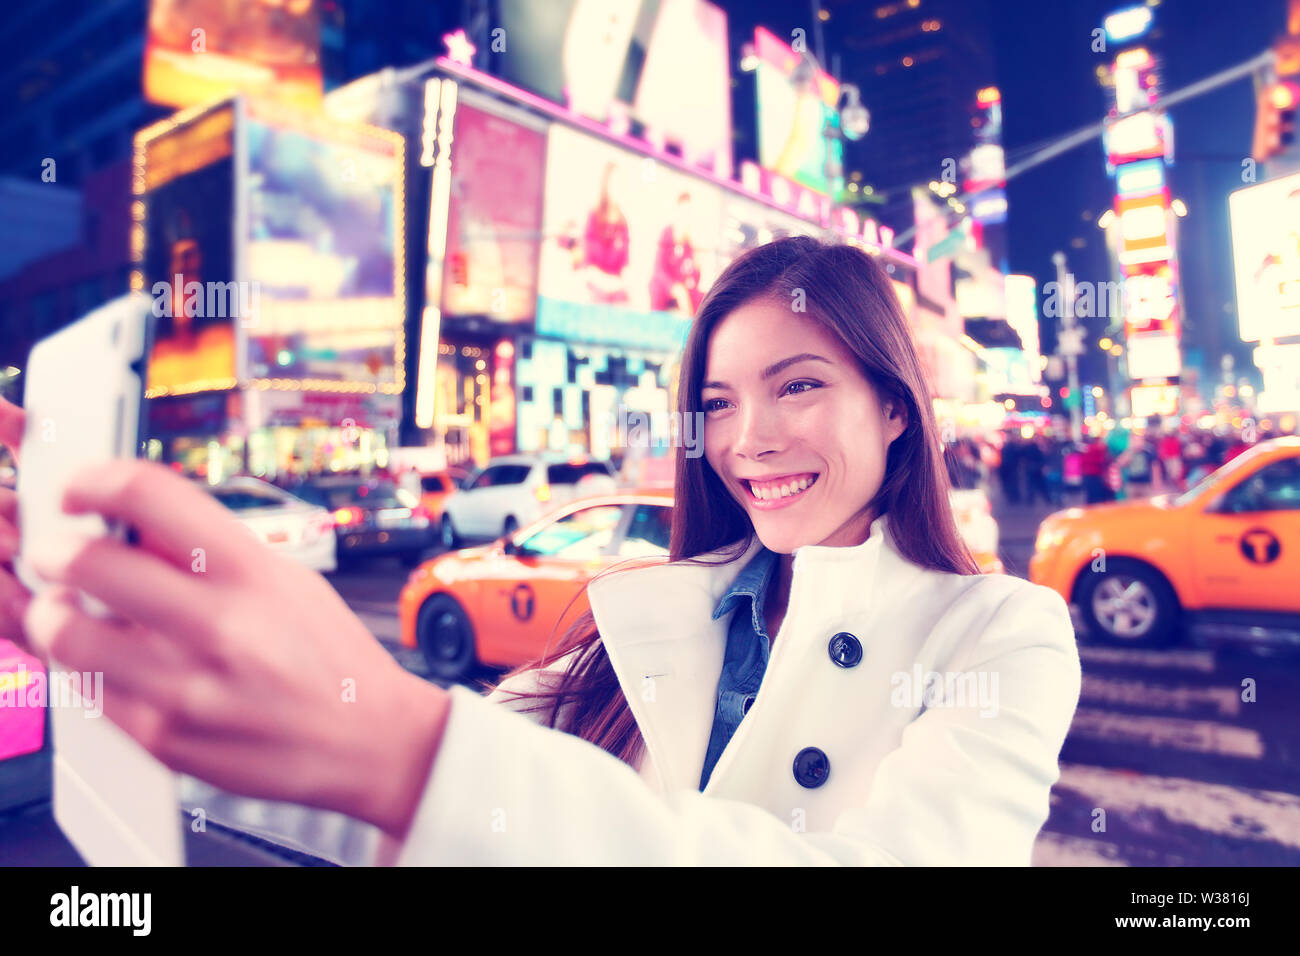 Happy woman tourist taking photo photo avec selfies comprimé dans la ville de New York, Manhattan, Times Square. Asiatiques multiethniques Caucasian woman dans son 20s et joyeuse happy smiling porter caban de printemps. Banque D'Images